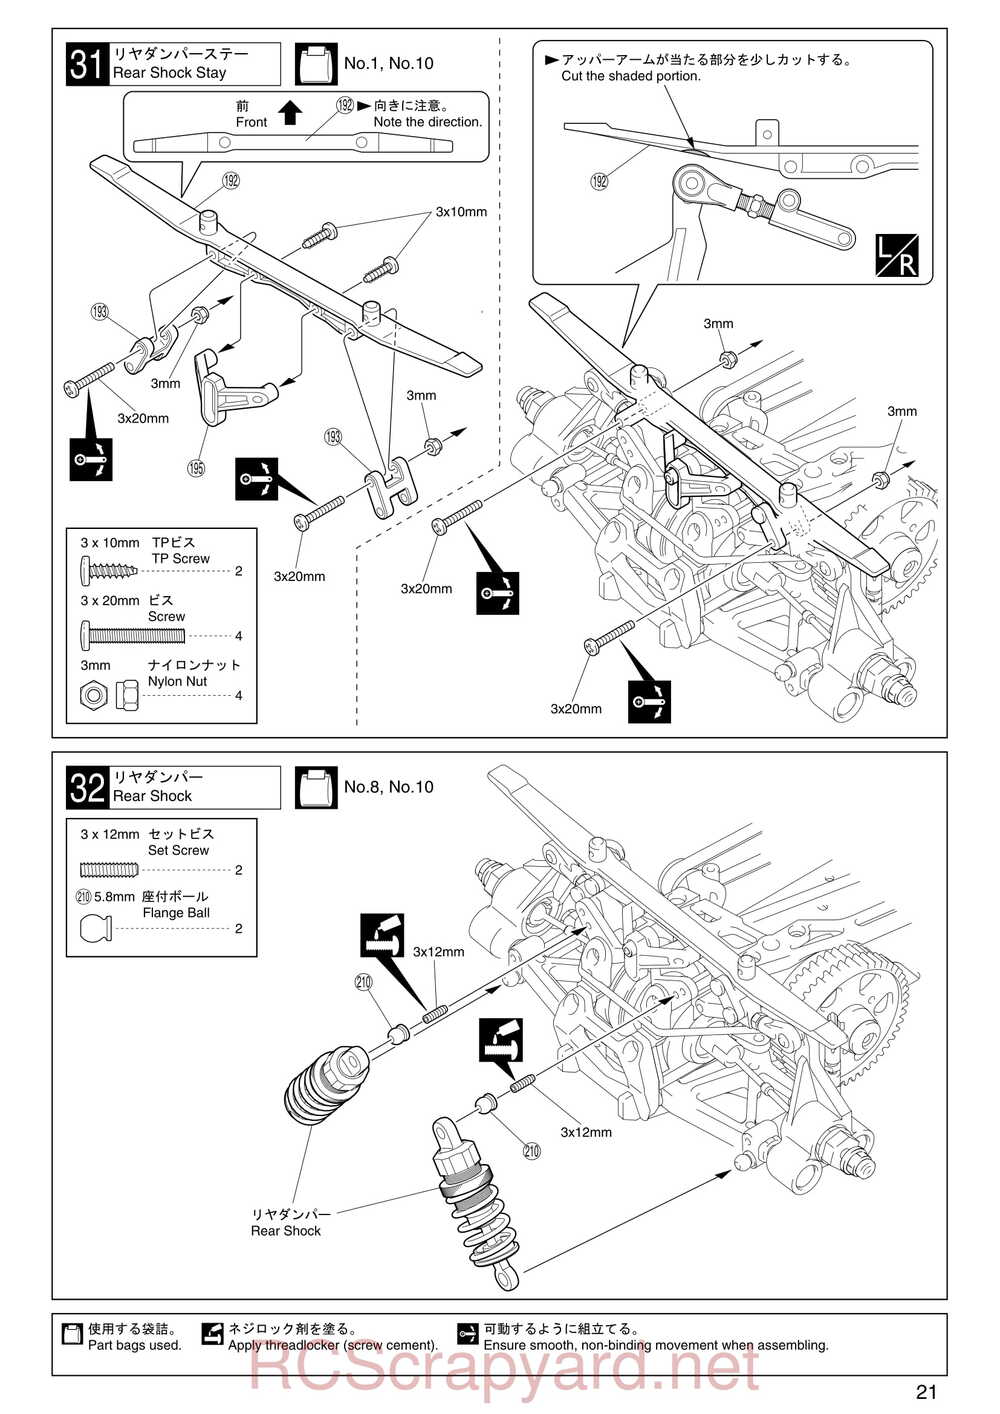 Kyosho - 31255 - V-One RR Evolution - Manual - Page 21